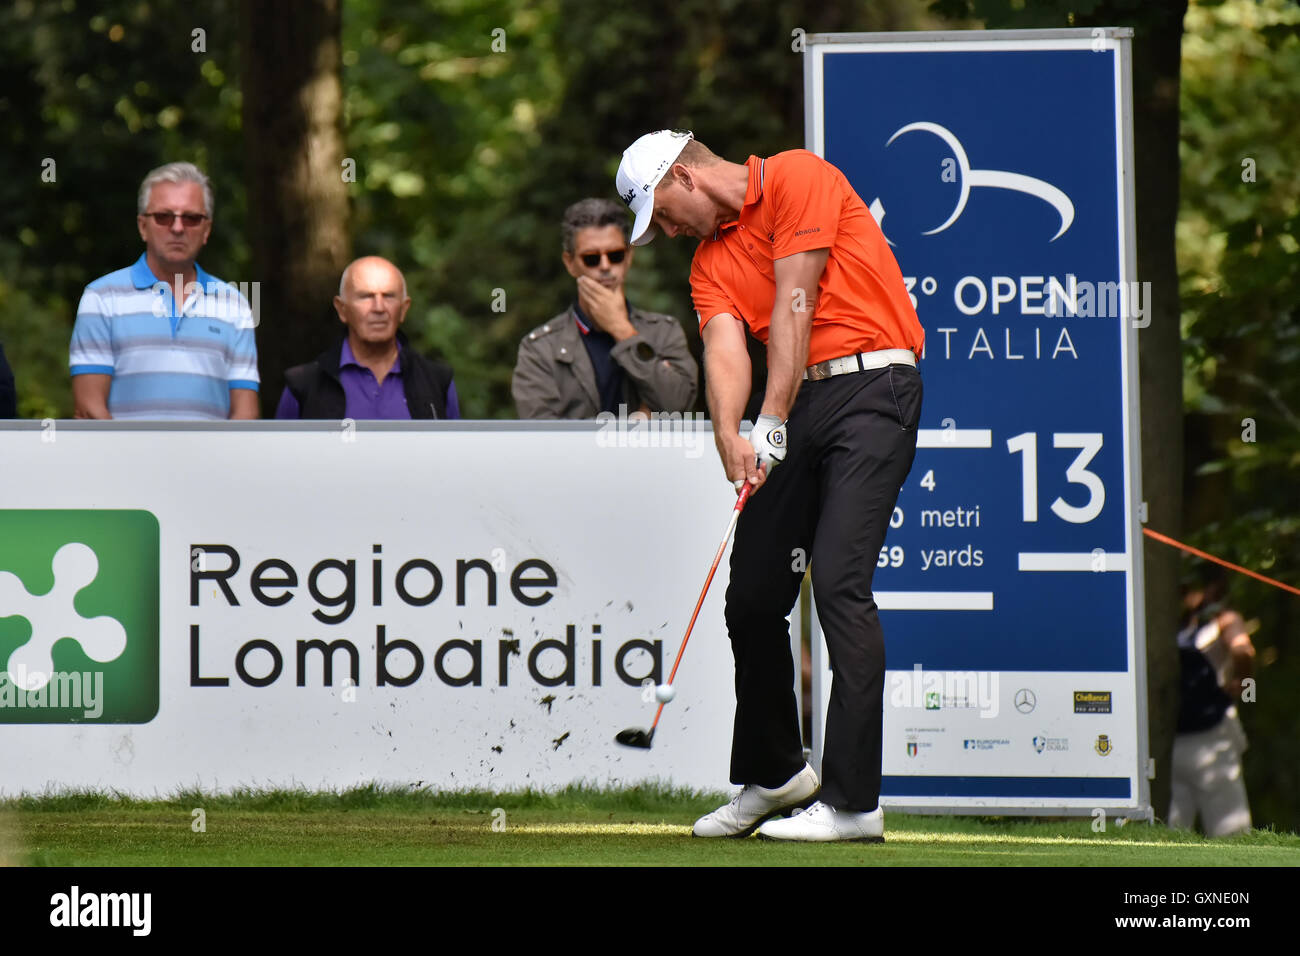 En Monza, Italia. El 17 de septiembre de 2016. Jugador de golf sueco Robert Karlsson en el 73 italianos Abierto de Golf 2016. Crédito: Federico Rostagno/Alamy Live News Foto de stock